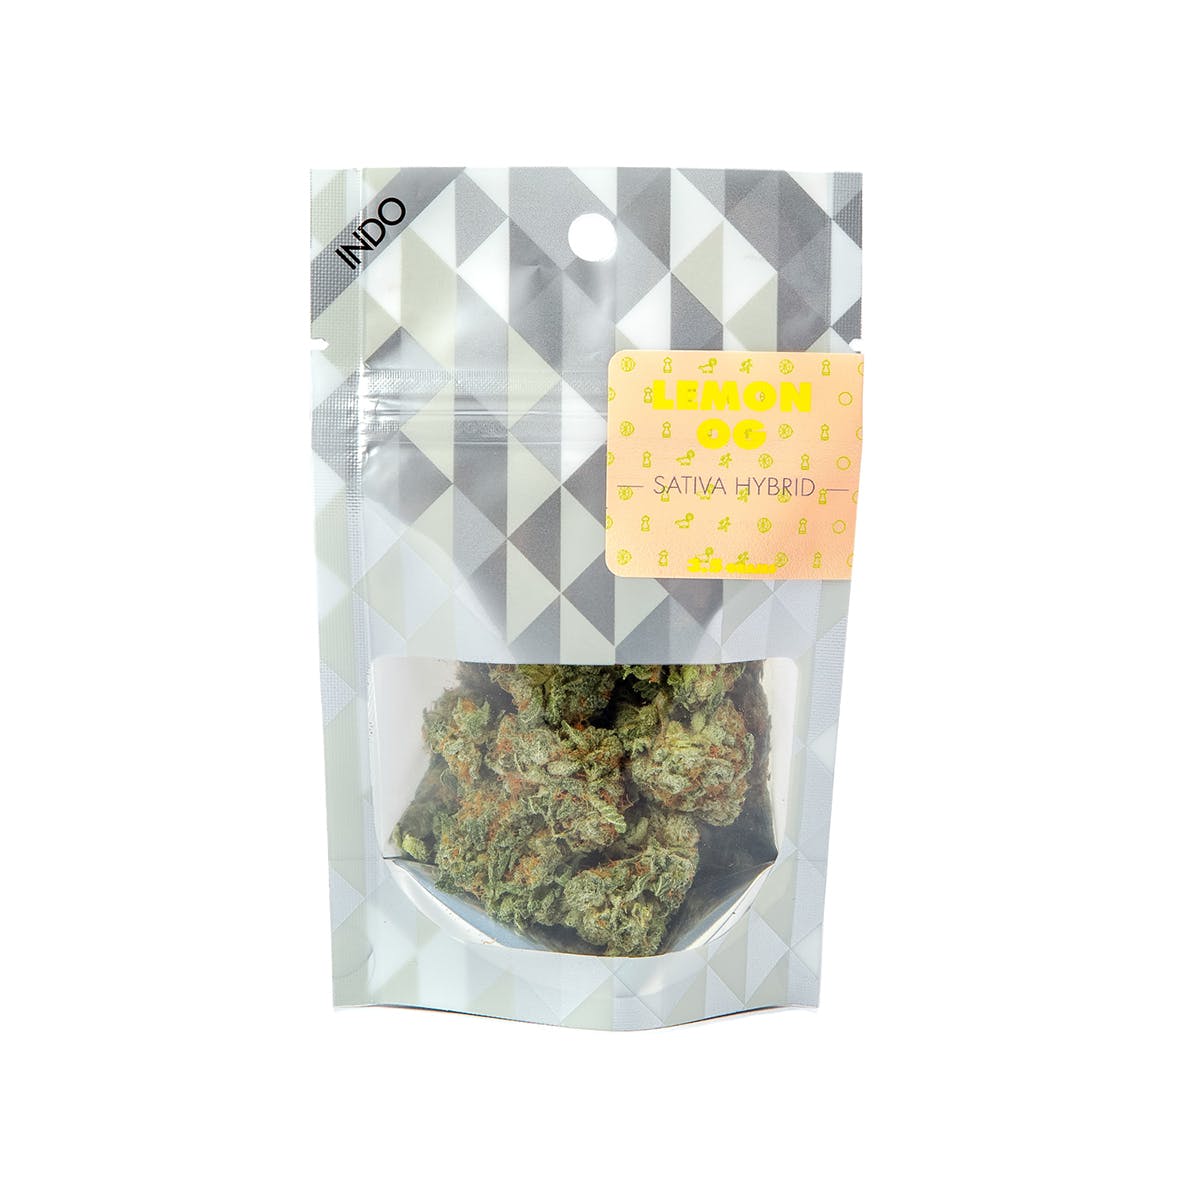 marijuana-dispensaries-local-roots-brier-in-brier-lemon-og